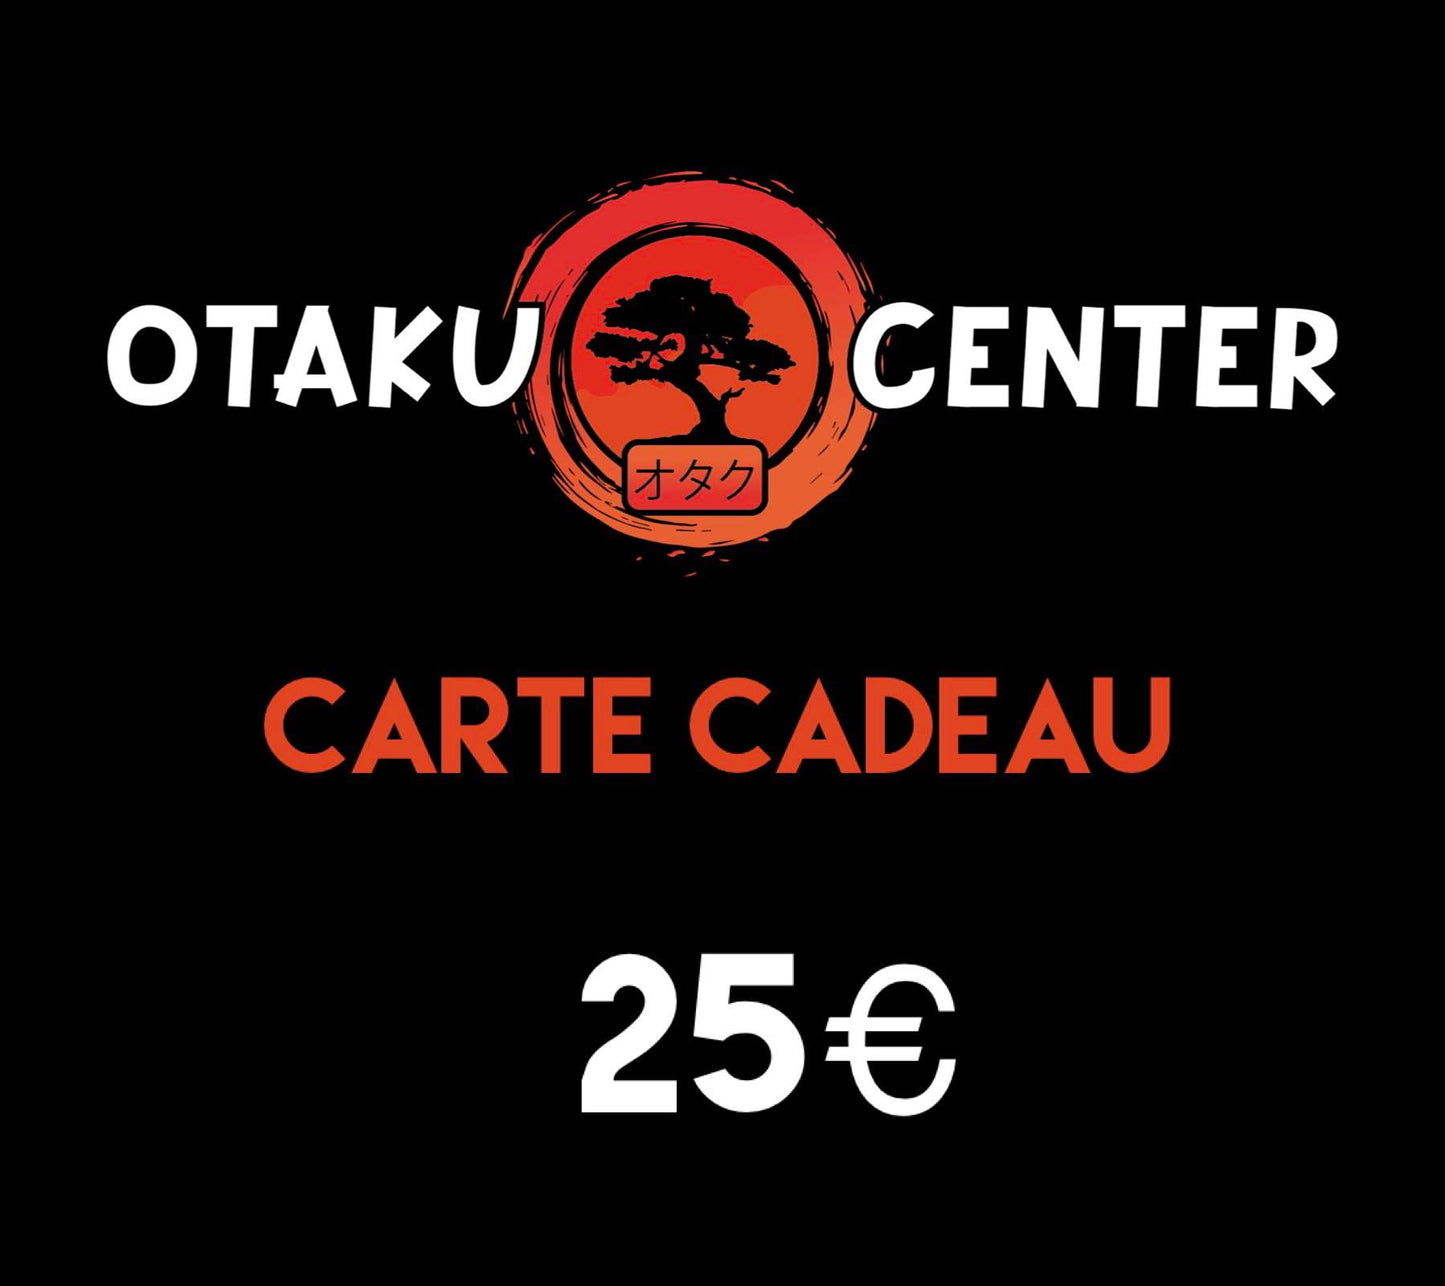 The Otaku Center Gift Card